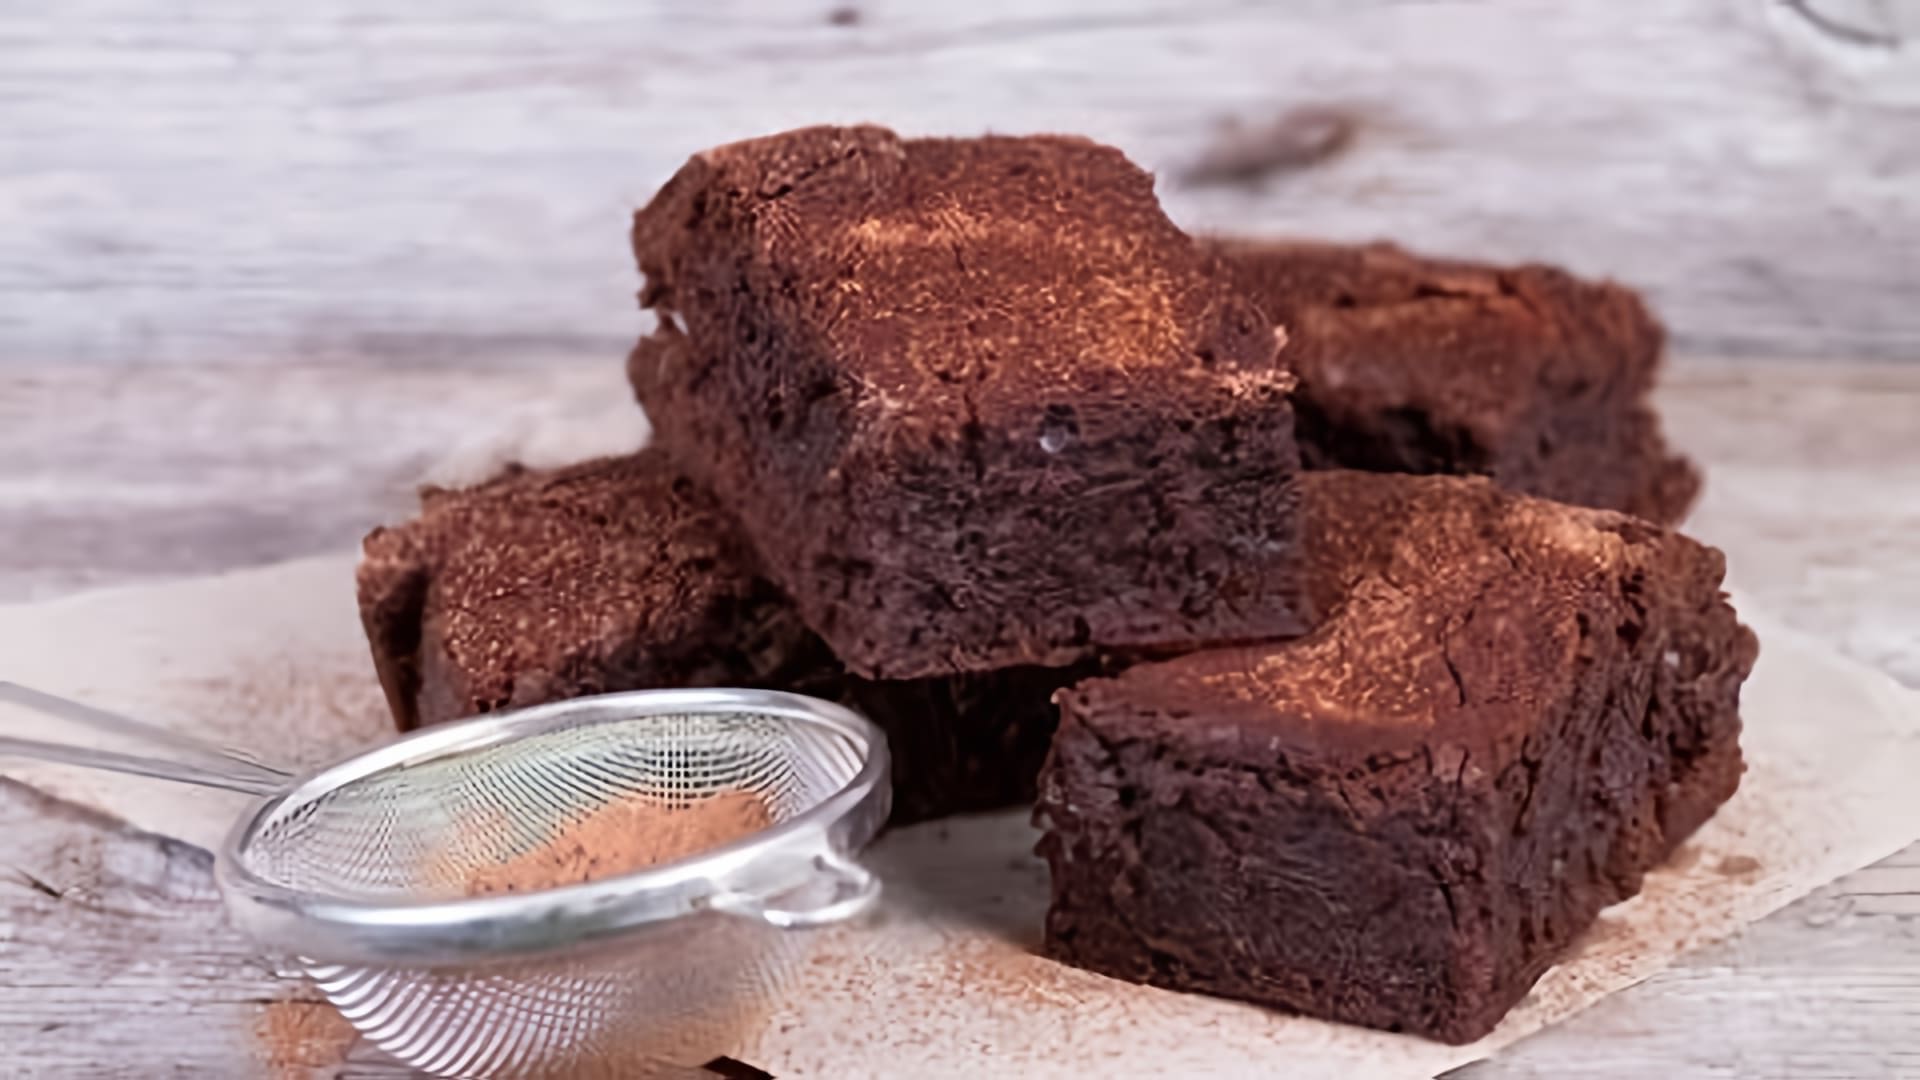 Брауни - это вкусный и популярный десерт, который можно приготовить дома